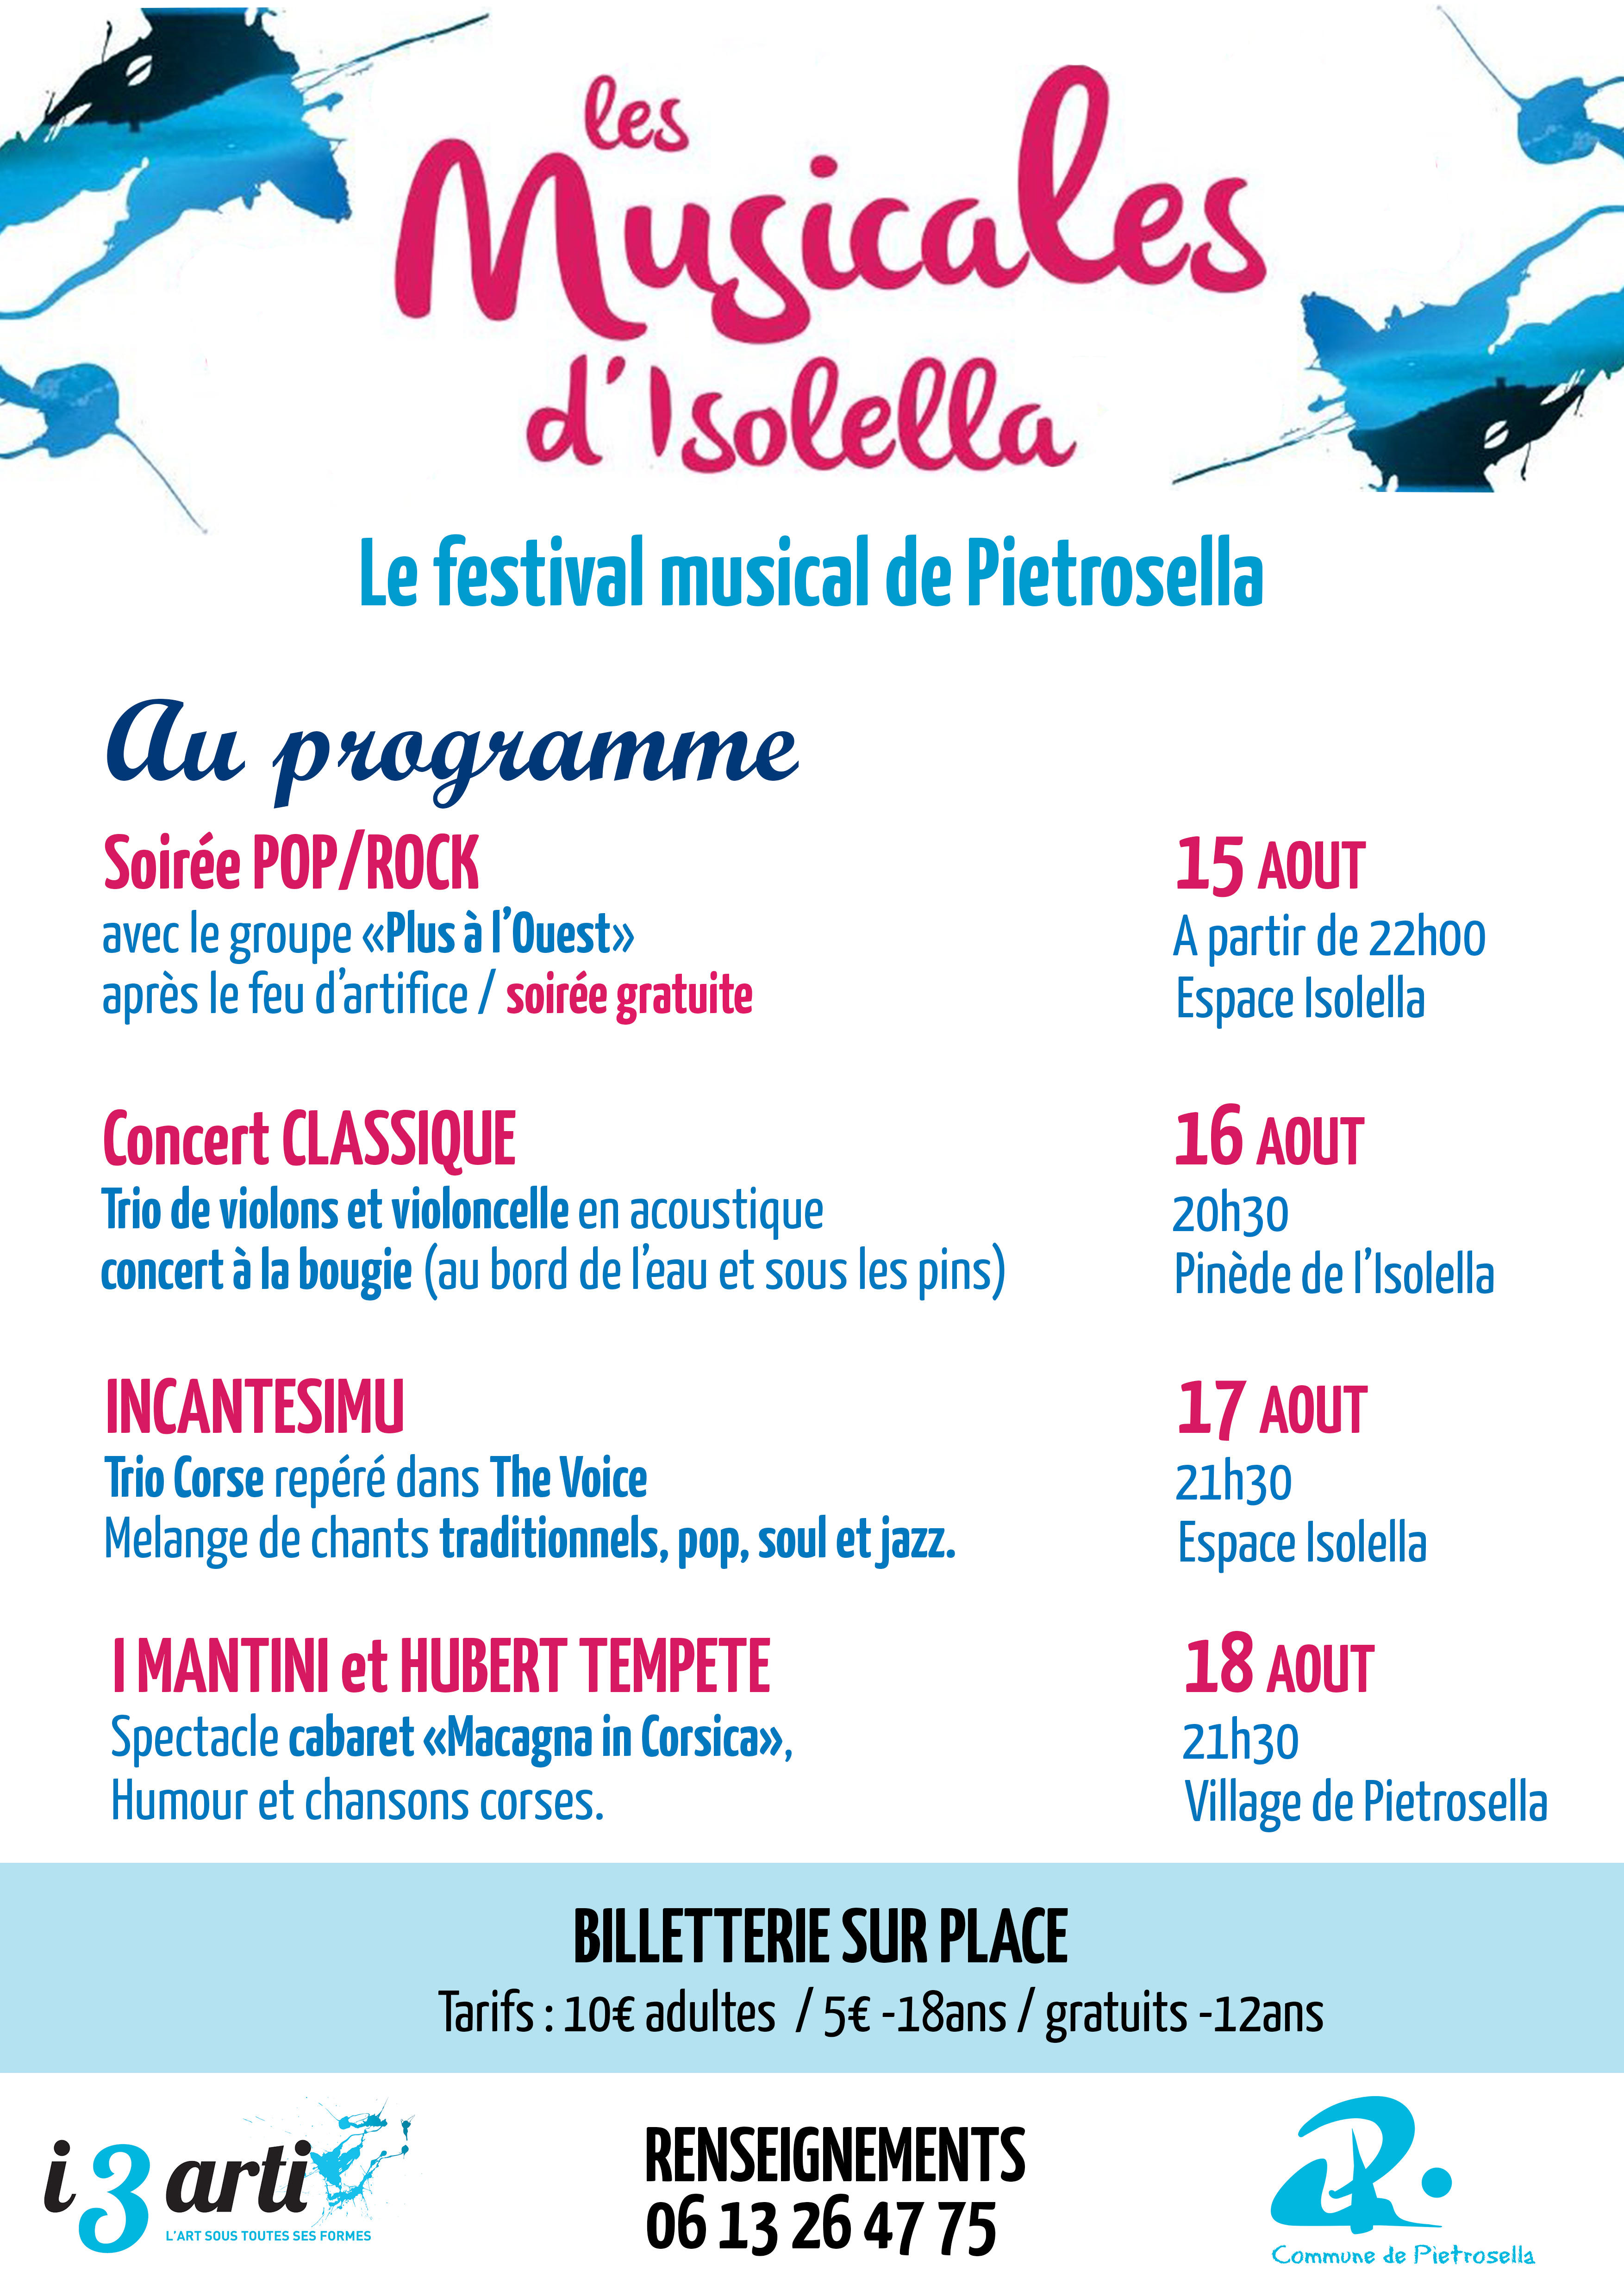 Pietrosella : Les Musicales d’Isolella reviennent en version nomade